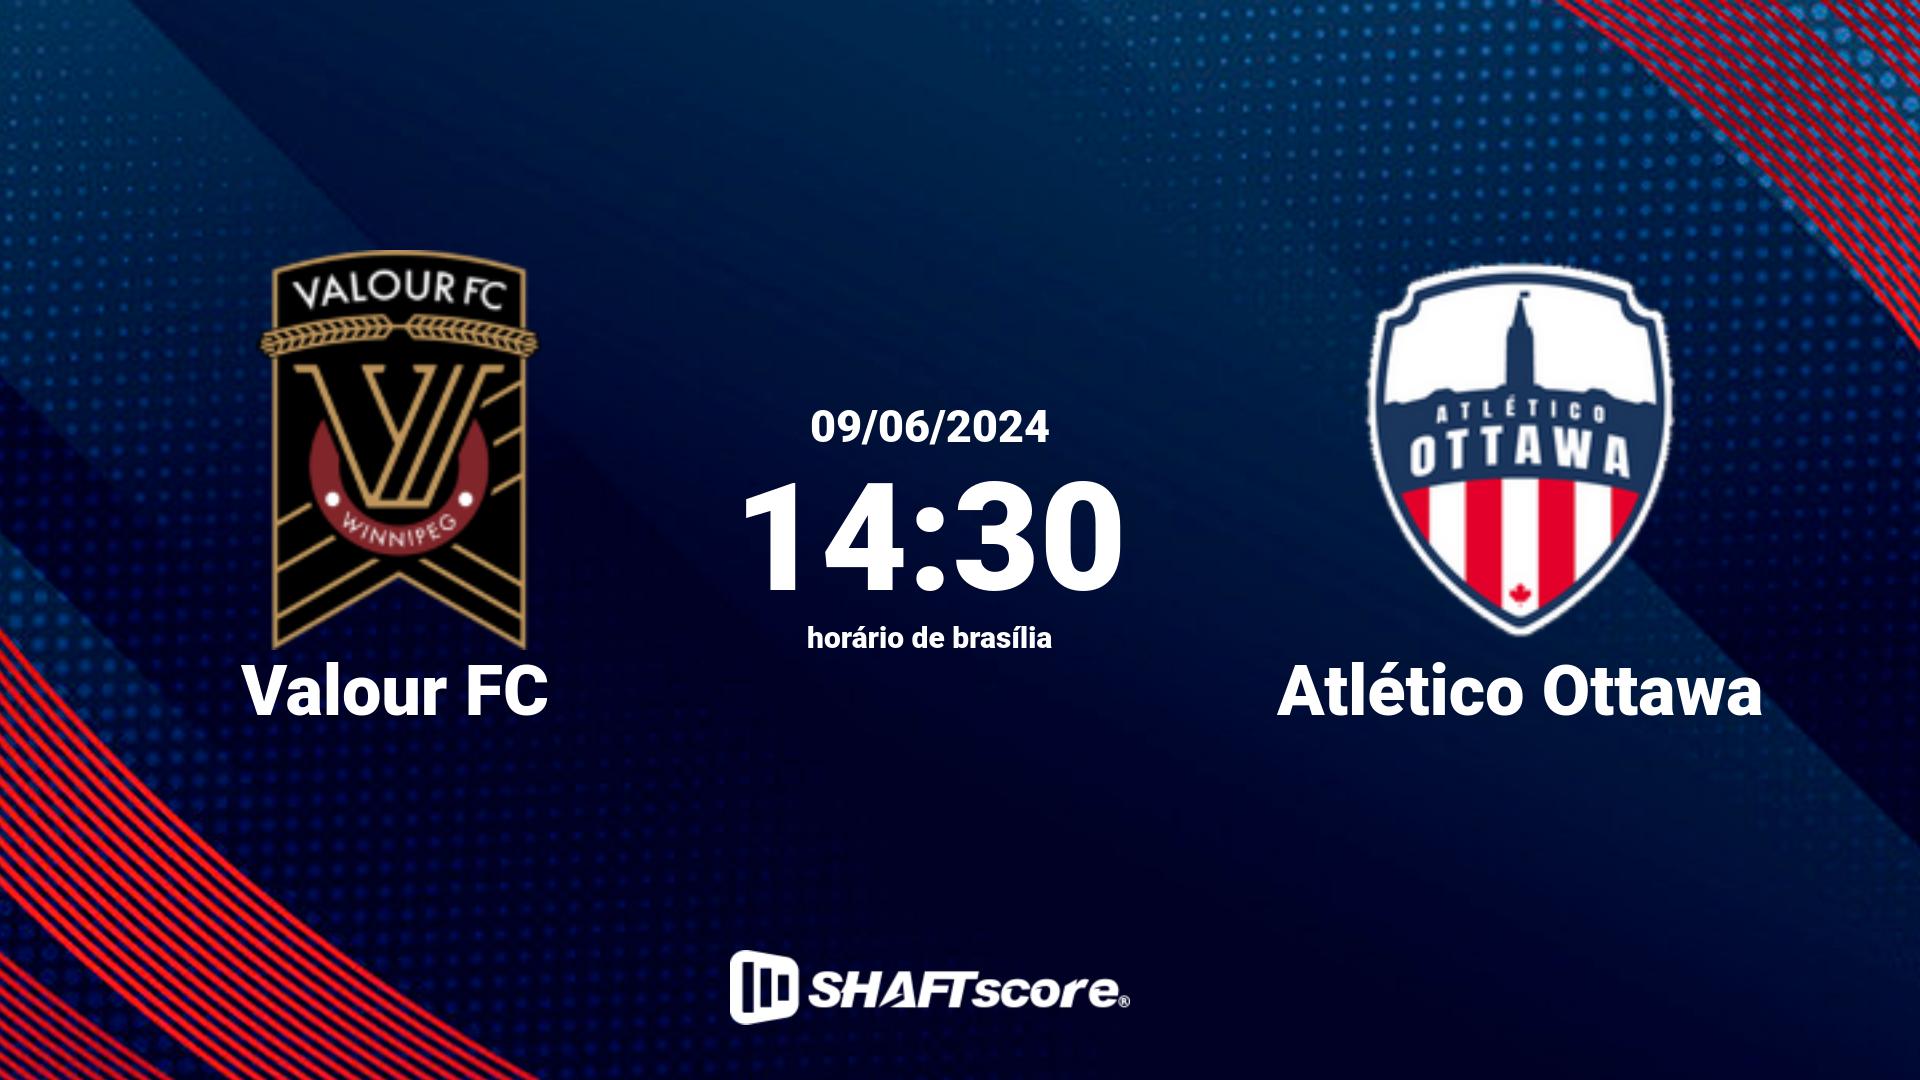 Estatísticas do jogo Valour FC vs Atlético Ottawa 09.06 14:30